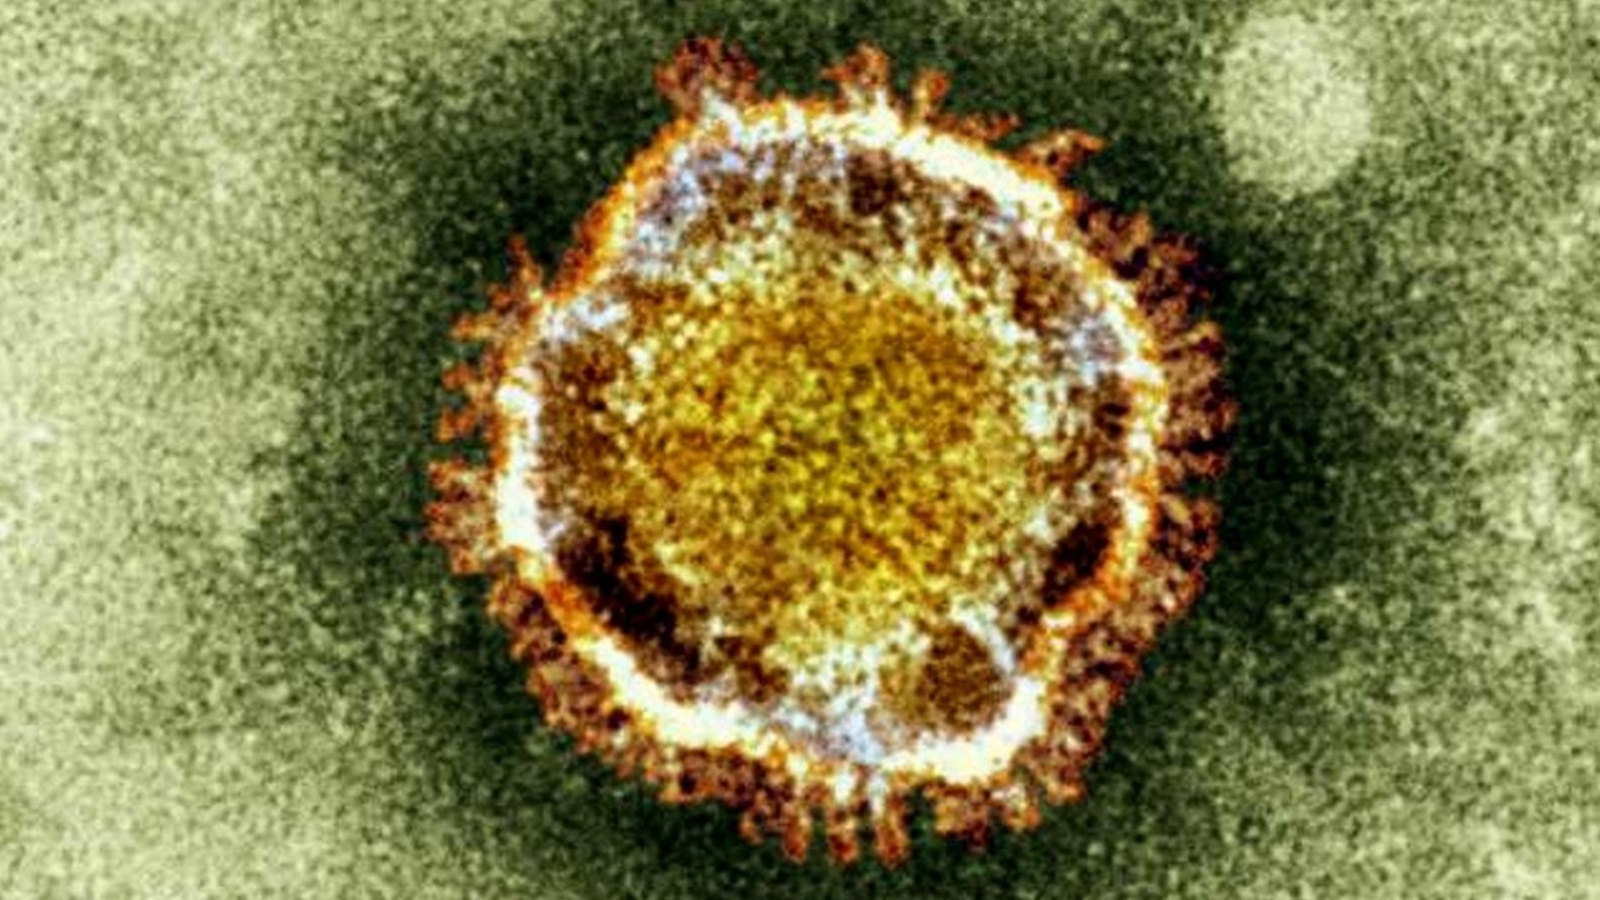 ‪فيروس كورونا ينتمي إلى عائلة الفيروسات التاجية‬  (أسوشيتد برس)